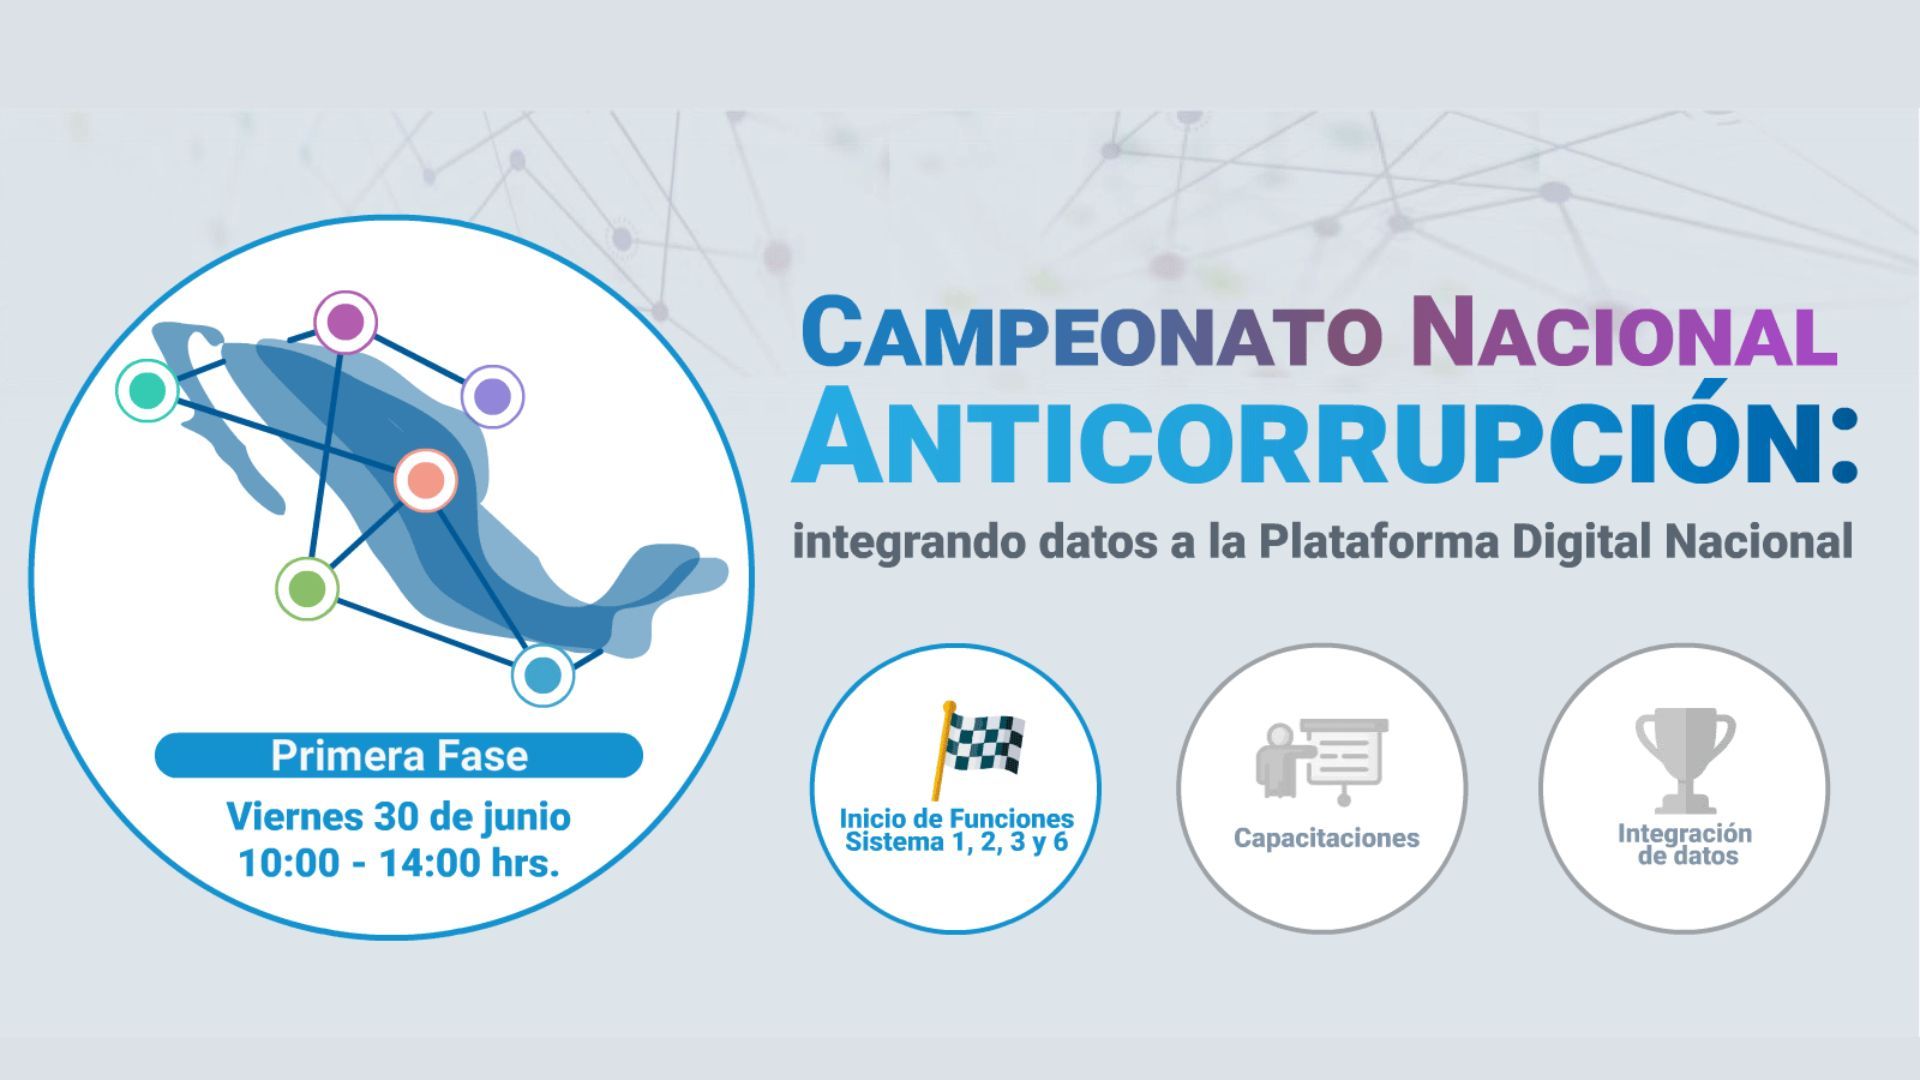 Campeonato Nacional Anticorrupción: integrando datos a la Plataforma Digital Nacional.